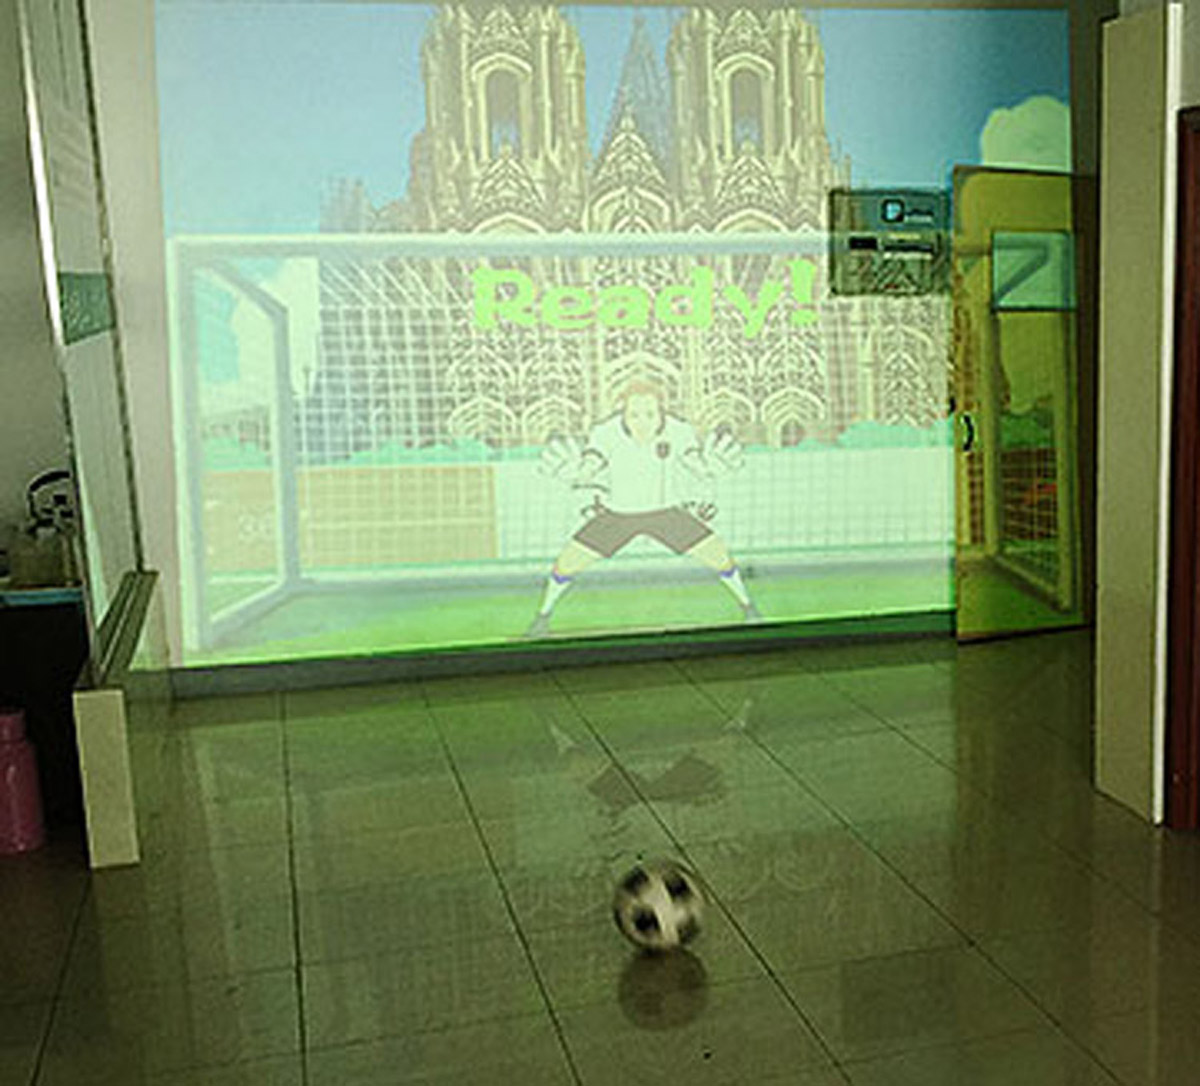 科普教育使用体感识别技术的虚拟足球射门.jpg